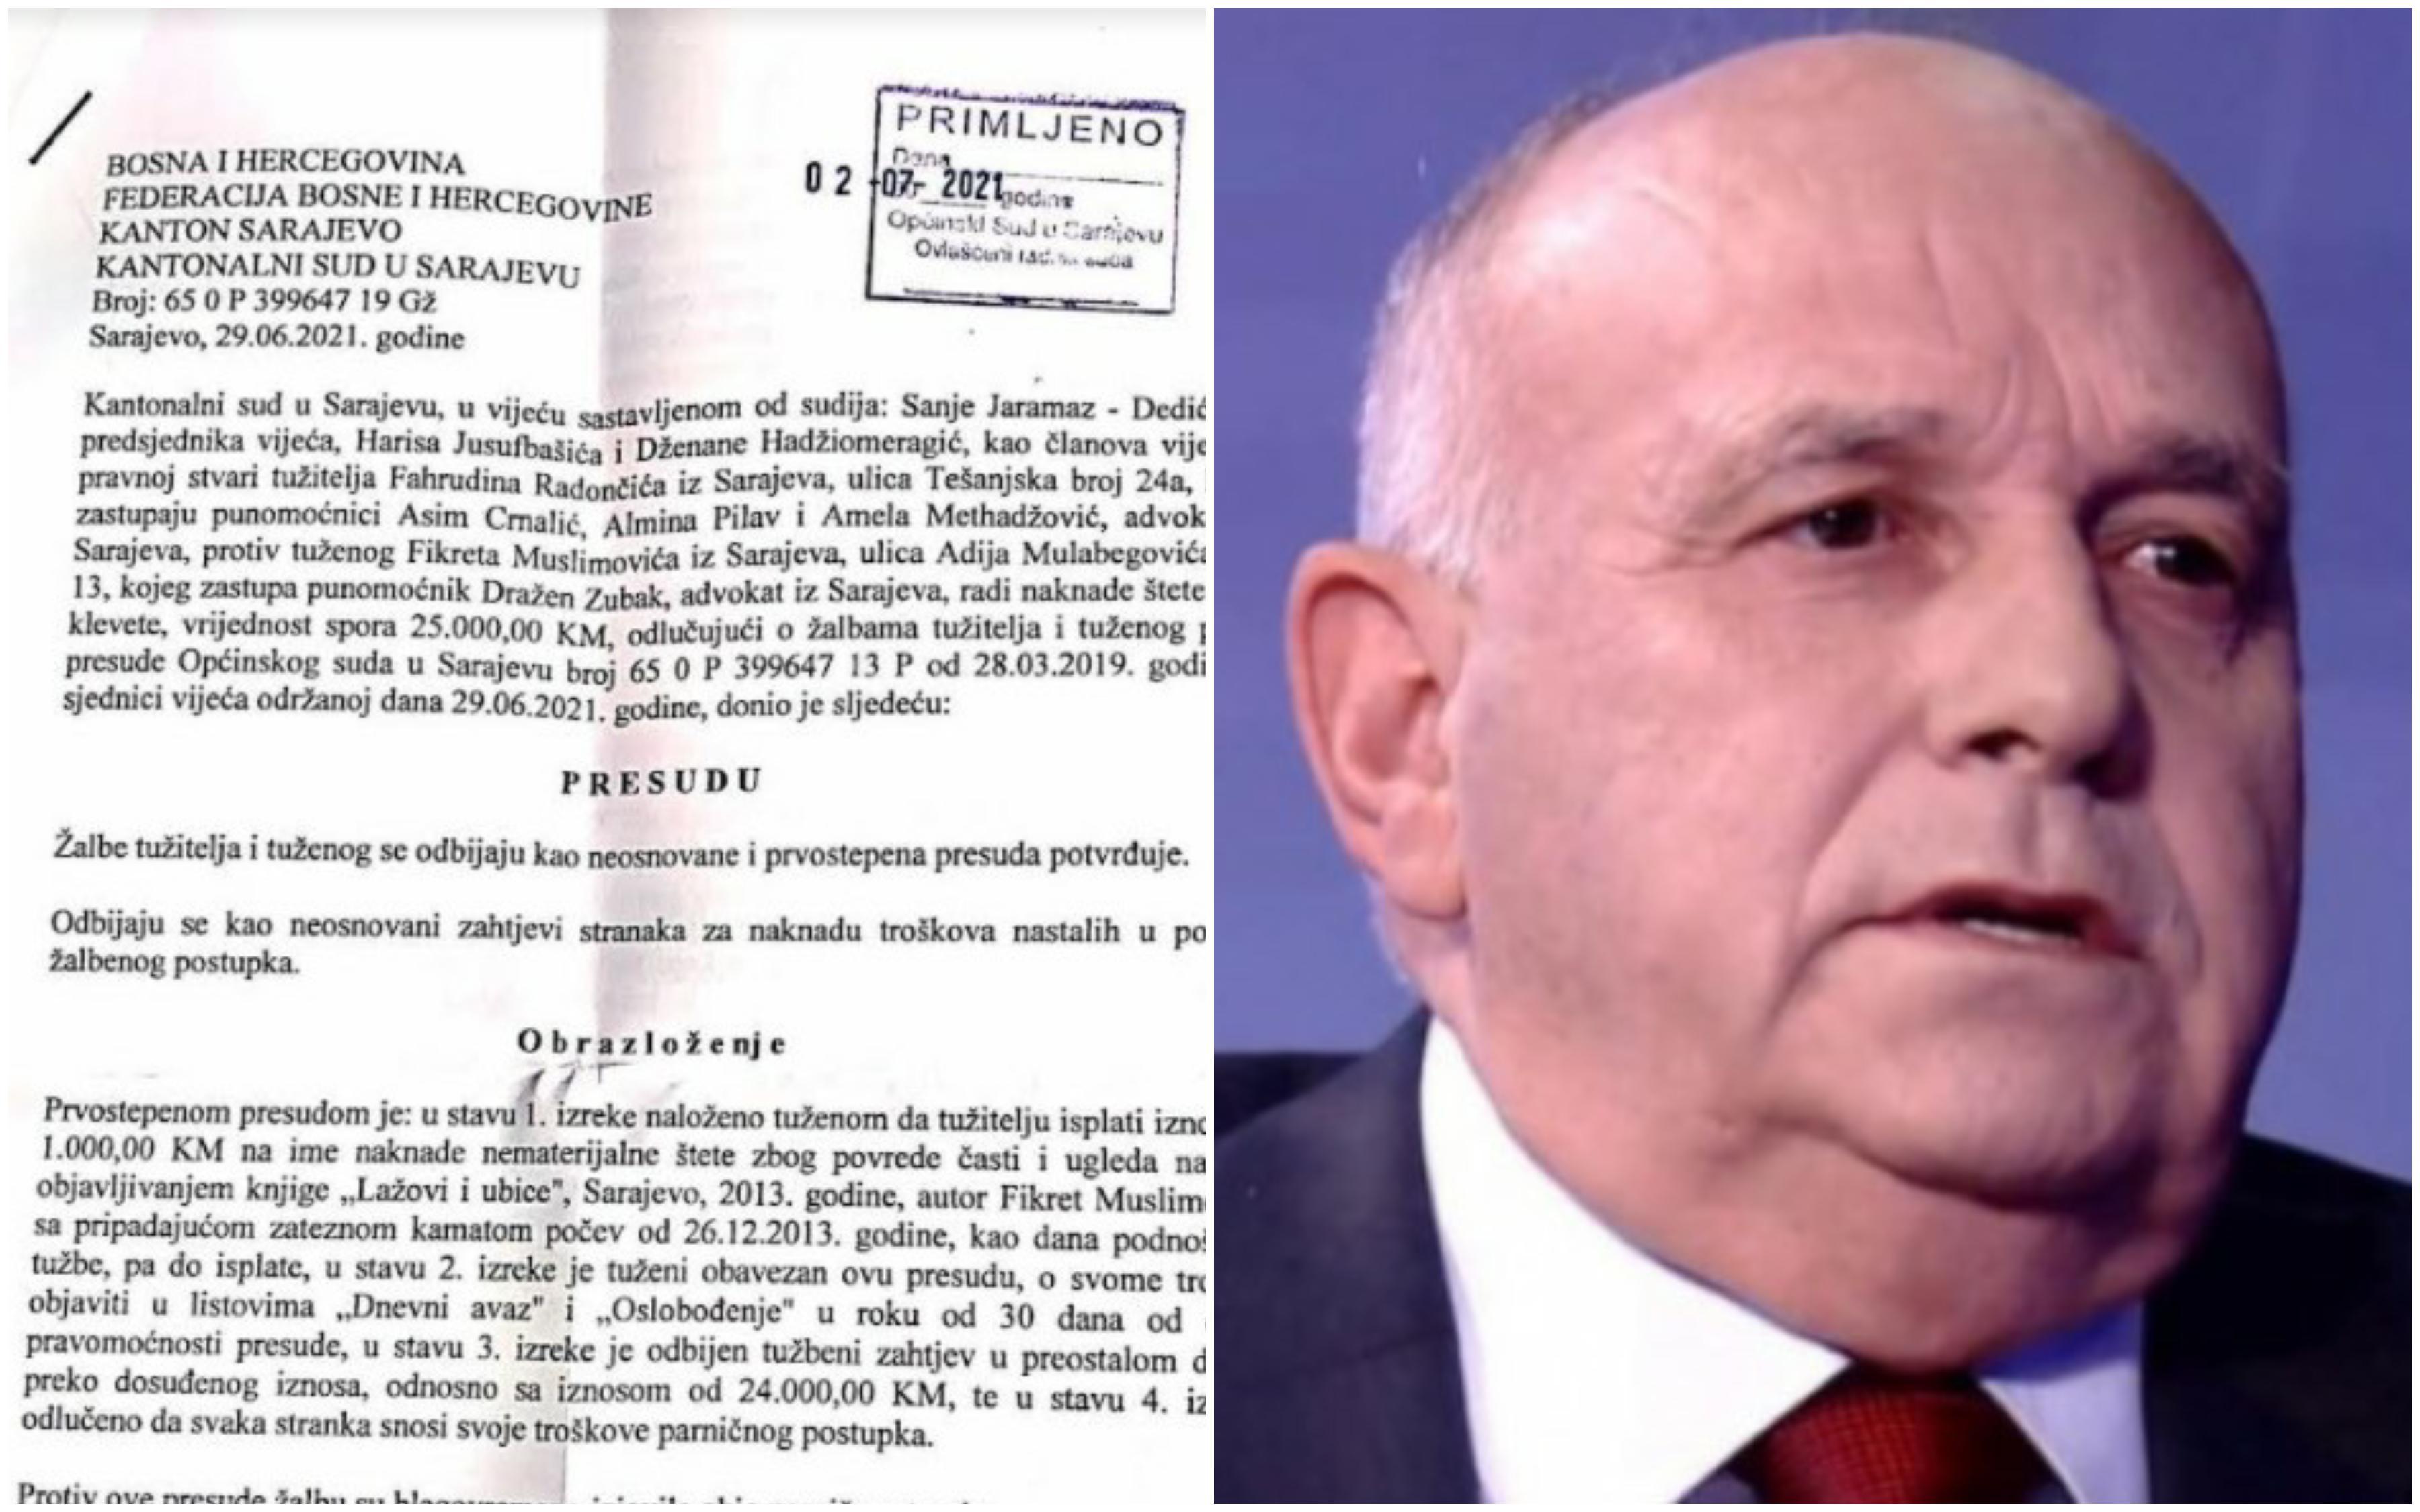 Fikret Muslimović, a former senior KOS official, one of the SDA ideologues and a former adviser to Bakir Izetbegović, made false claims about Fahrudin Radončić - Avaz